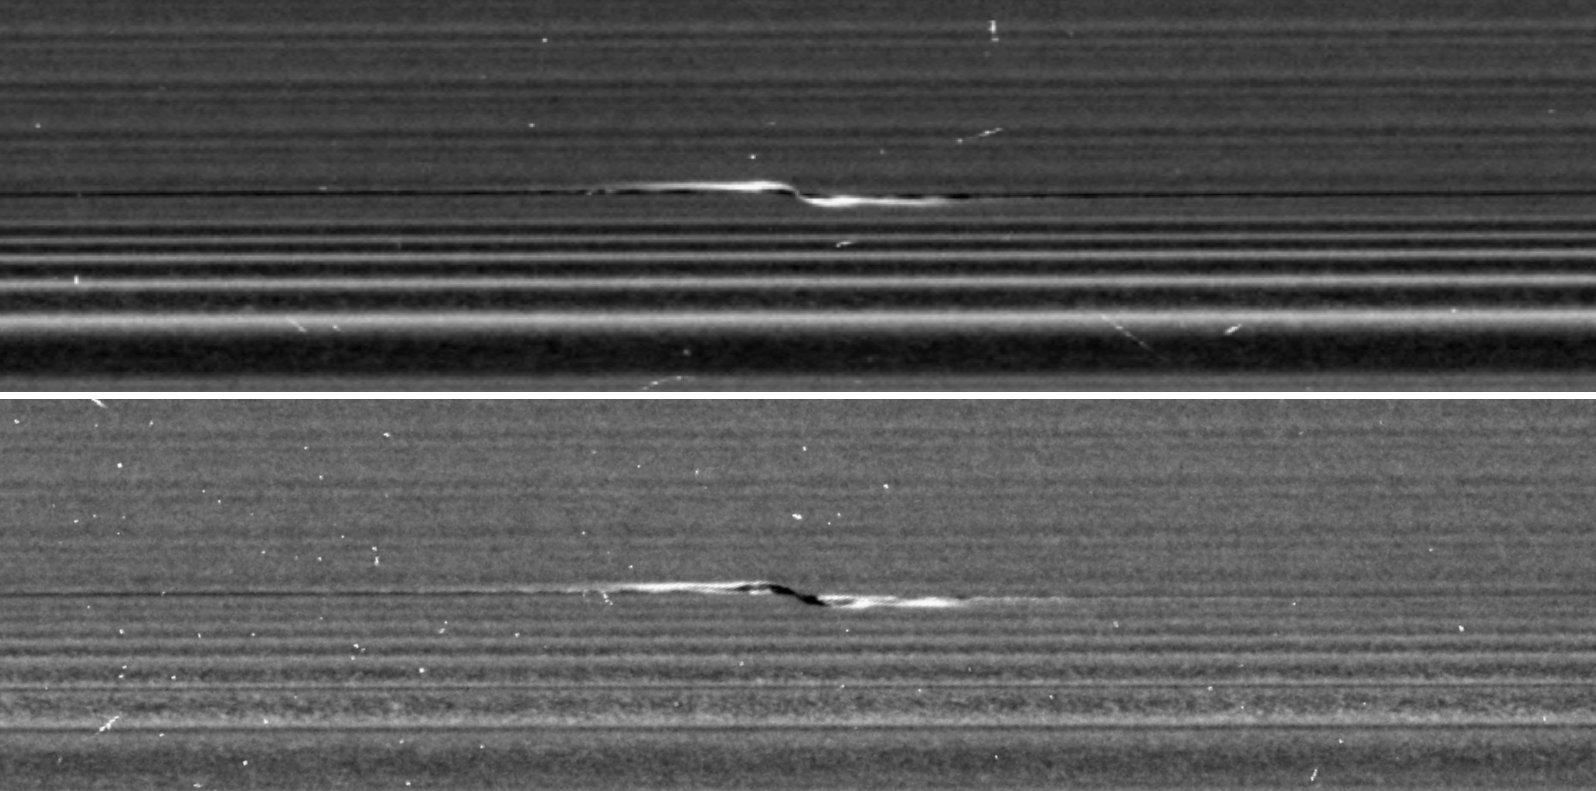 Propellers in Saturn's rings